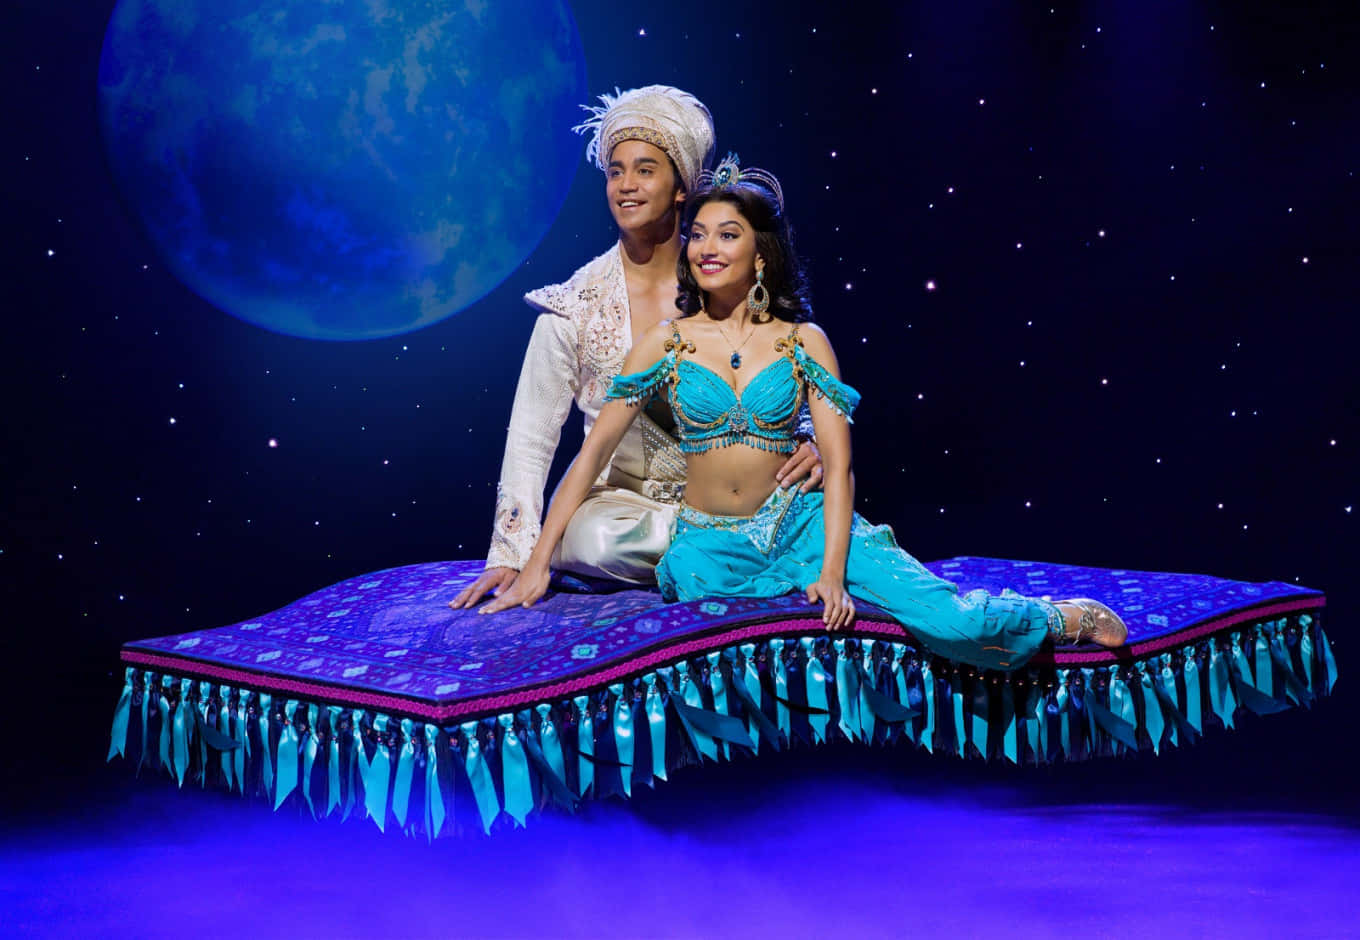 Enscen Från Aladdin, En Klassisk Disney Saga Om Äventyr Och Romantik.